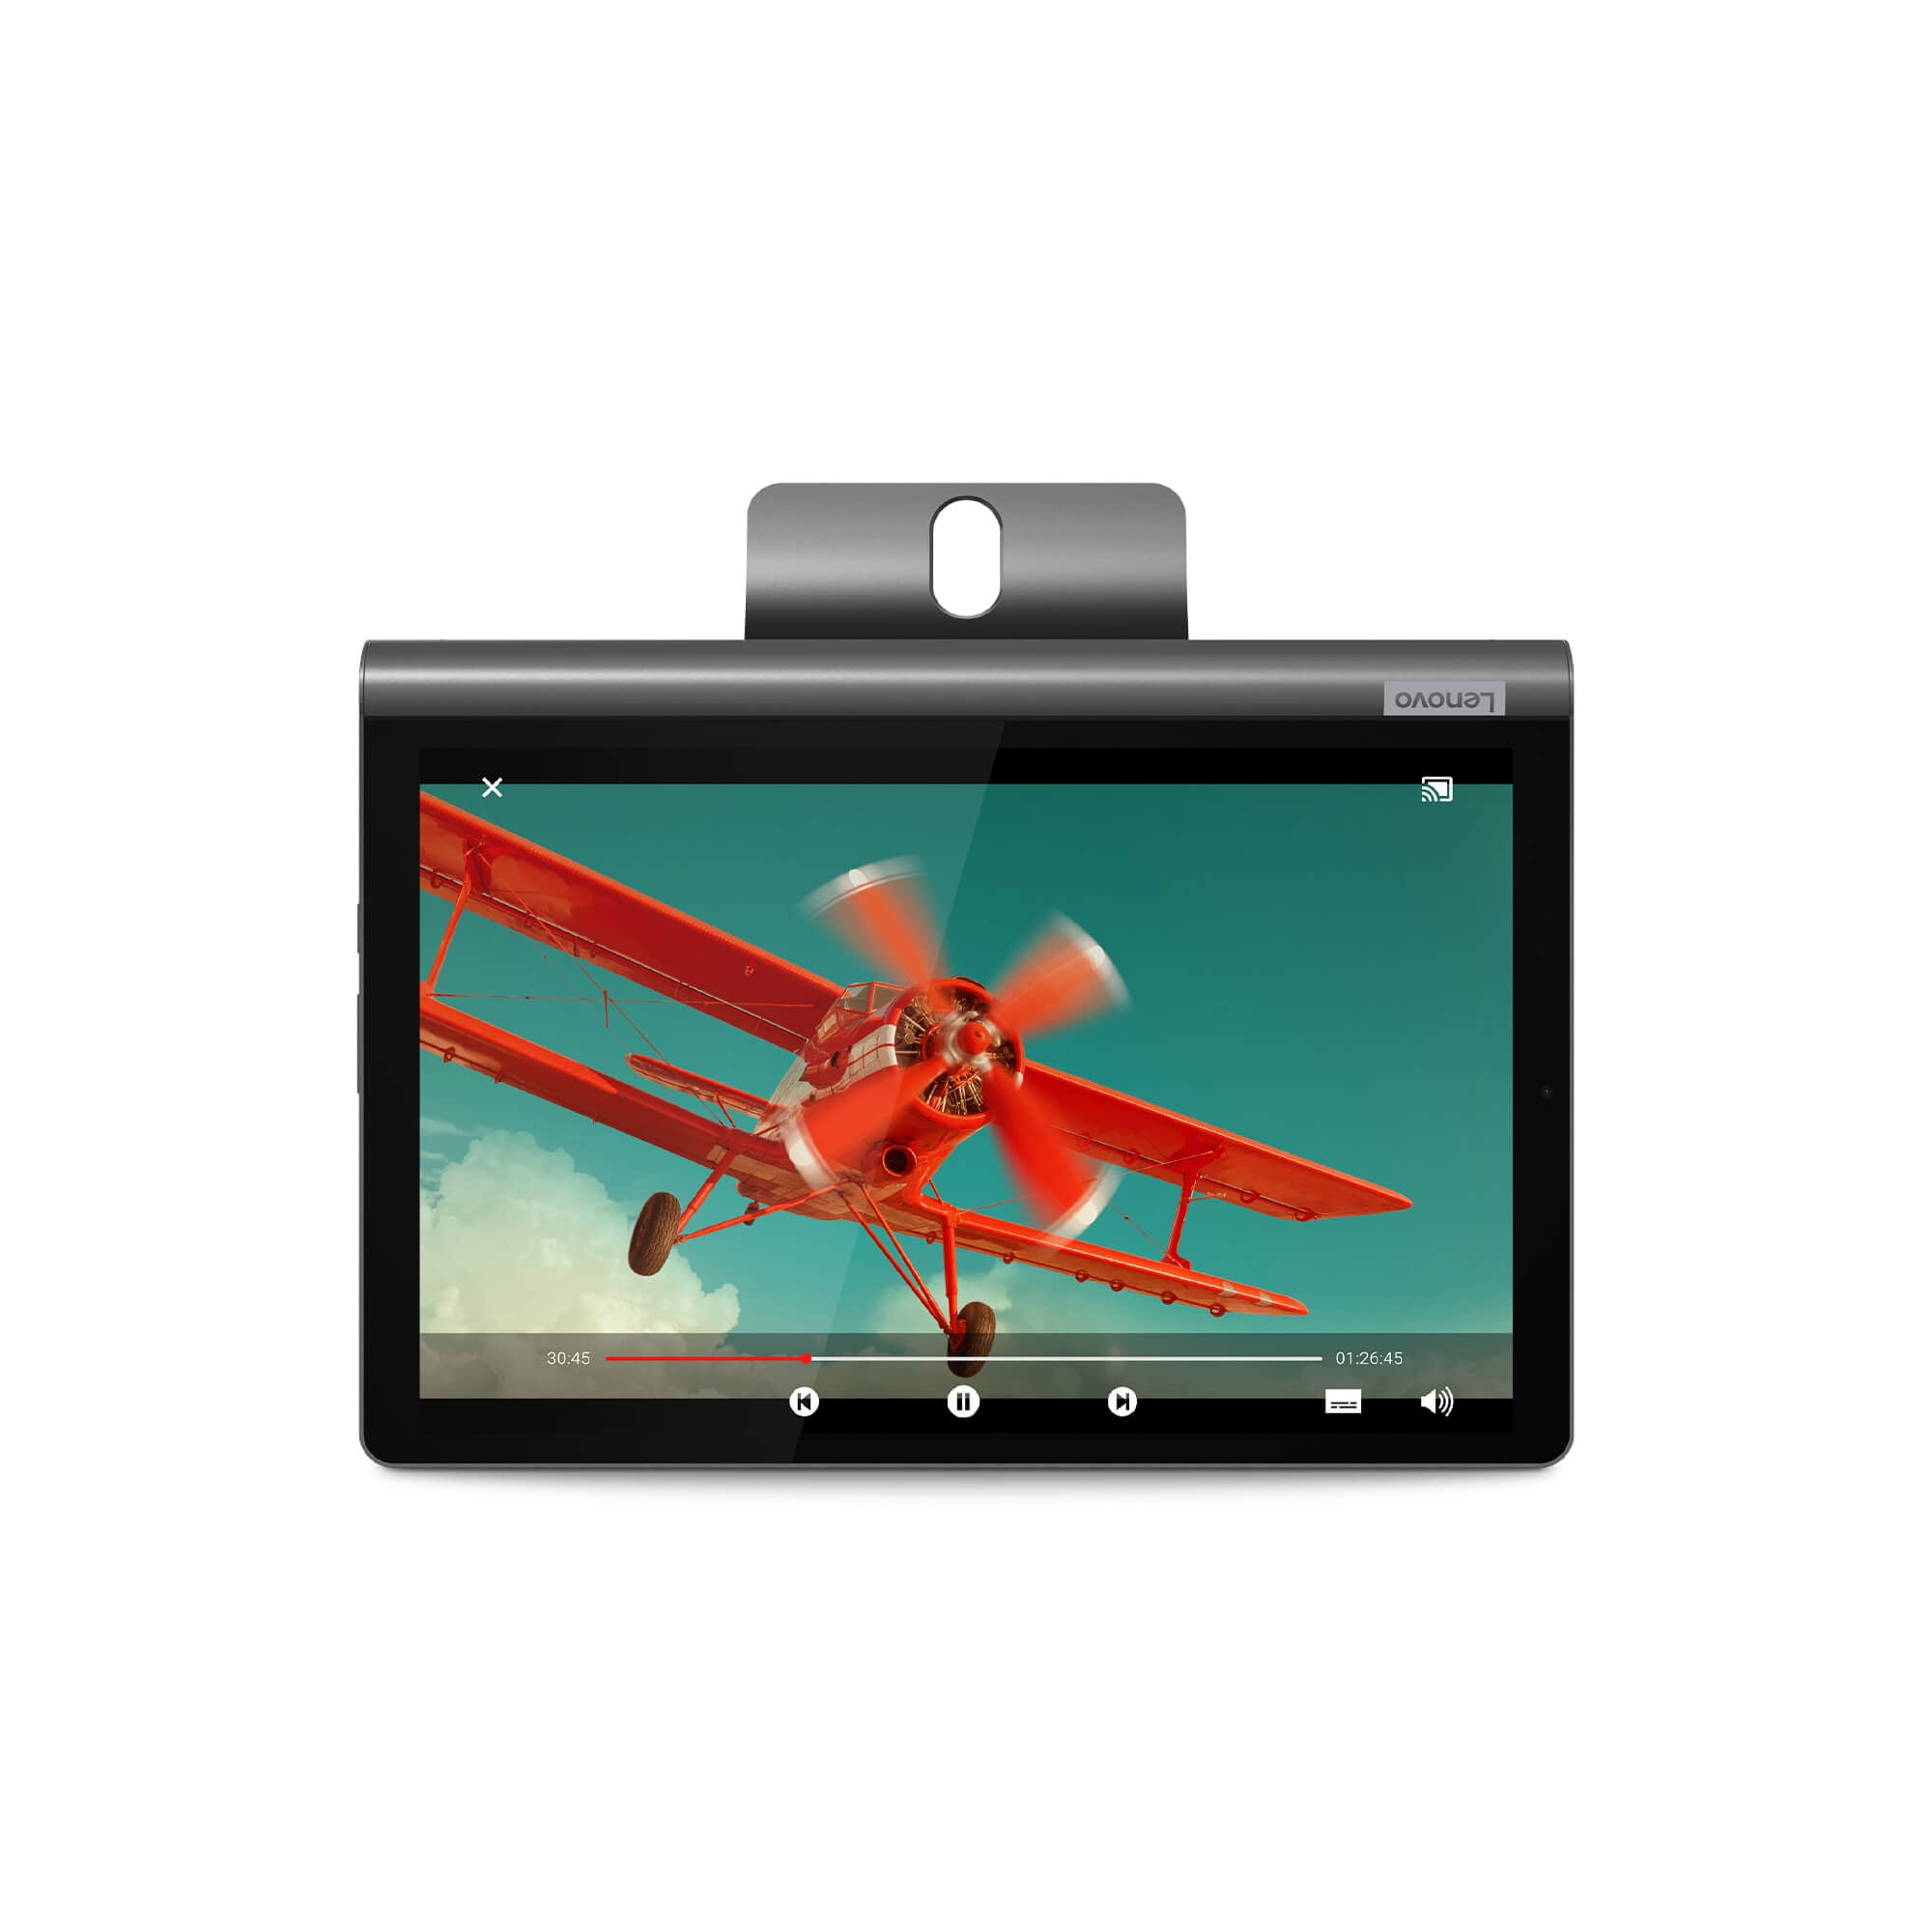 Lenovo Yoga Smart Tab in Gray, 10.1